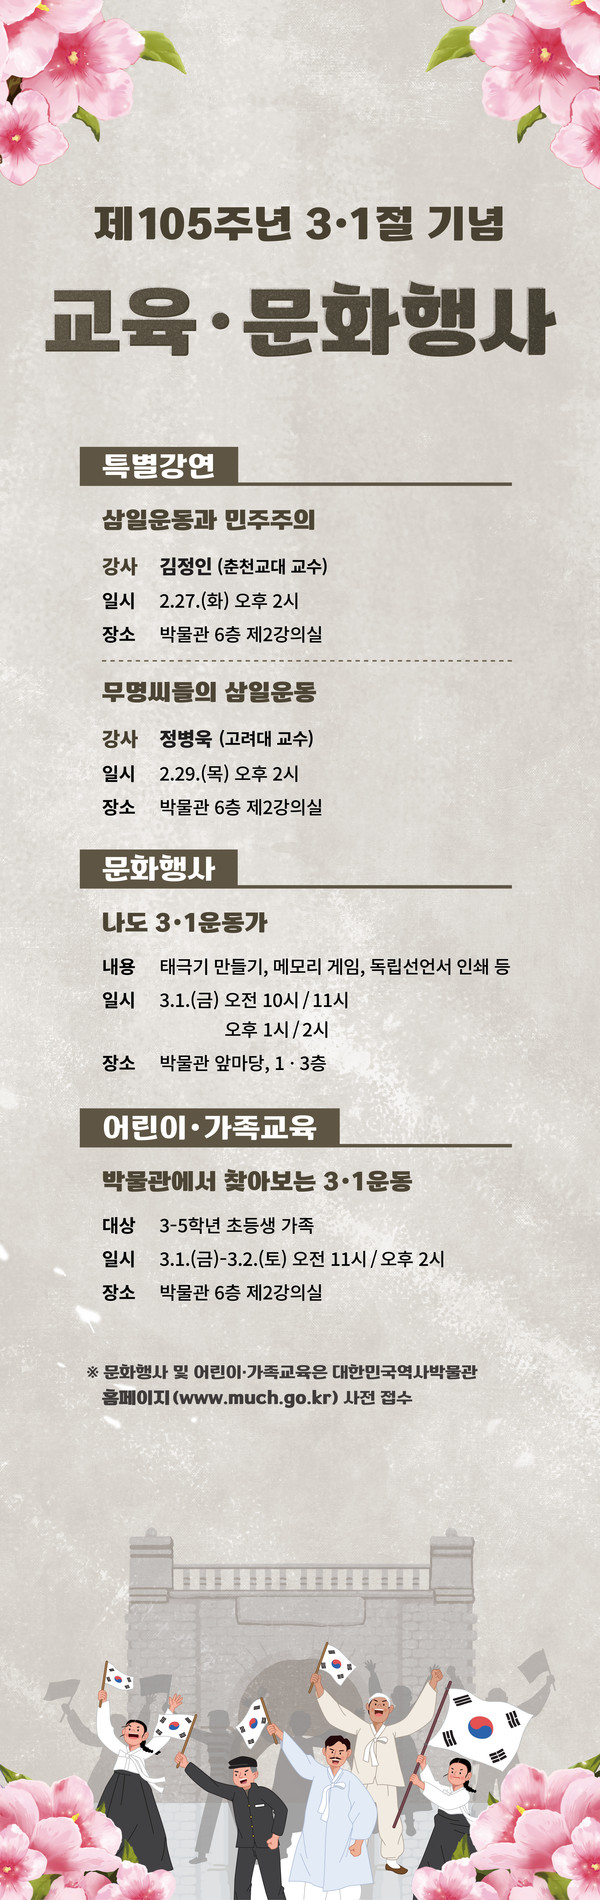 3‧1절 제105주년 기념 대한민국역사박물관 행사 포스터